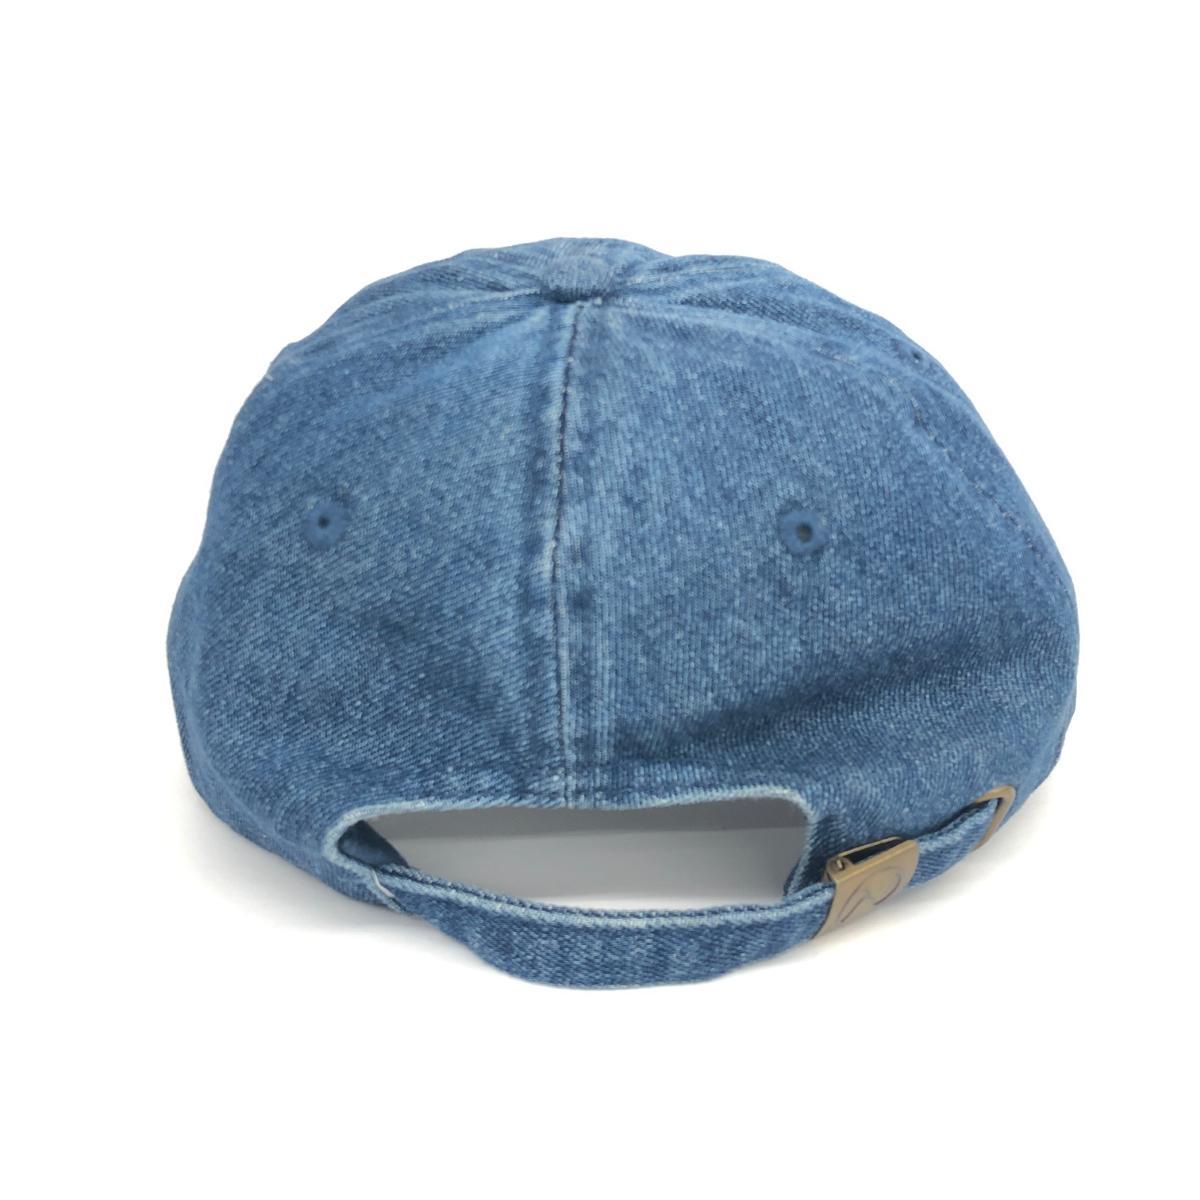 良好◆NEWHATTAN ニューハッタン キャップ ◆ ブルー デニム レディース 帽子 ハット hat 服飾小物_画像3